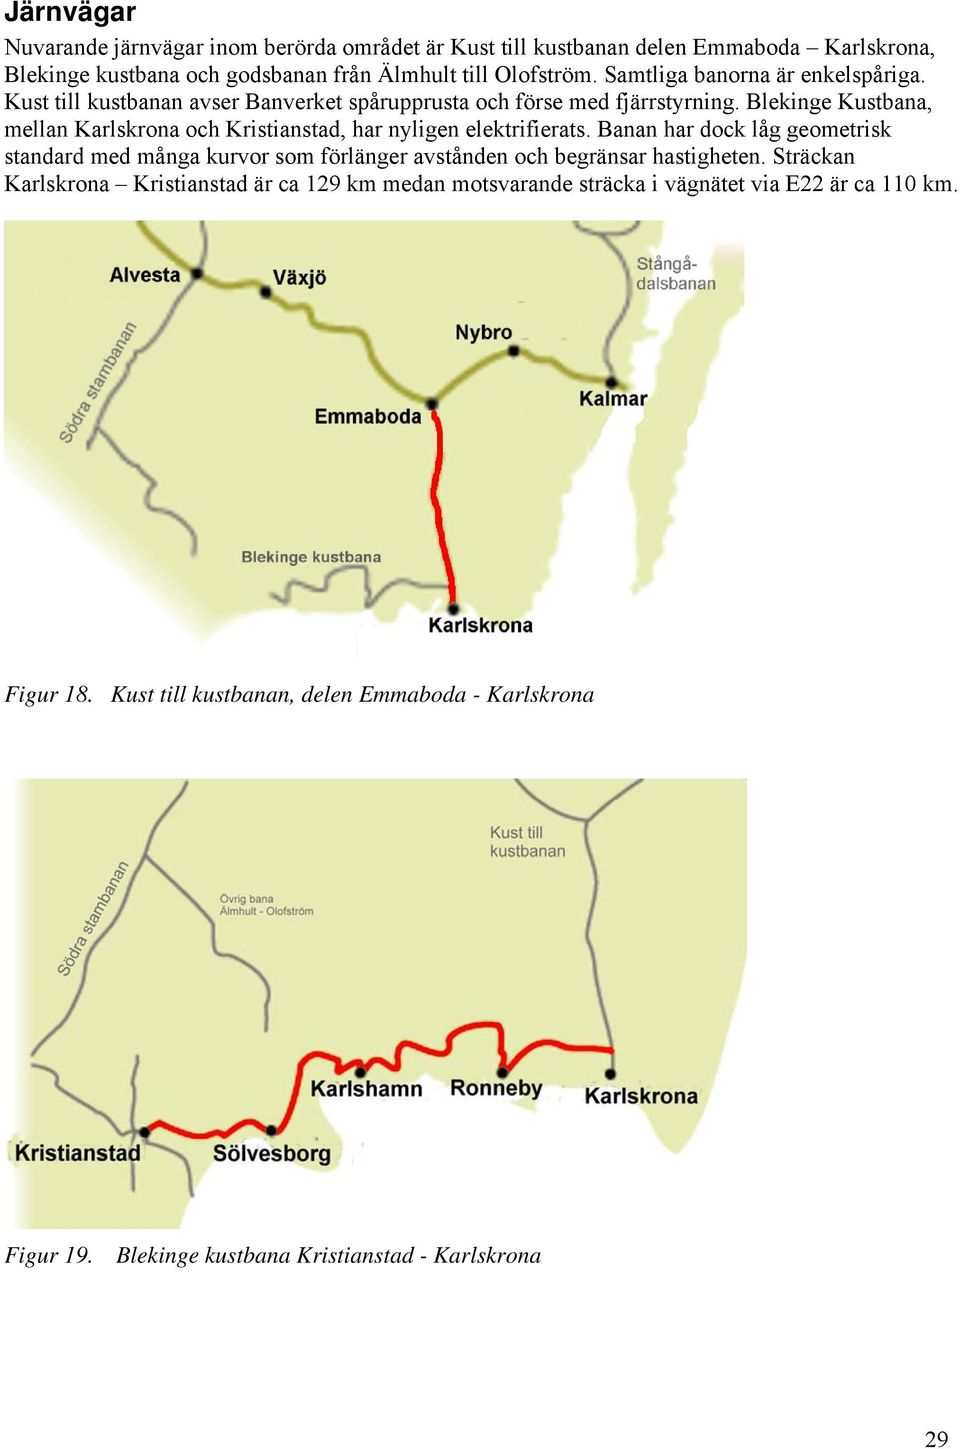 Blekinge Kustbana, mellan Karlskrona och Kristianstad, har nyligen elektrifierats.